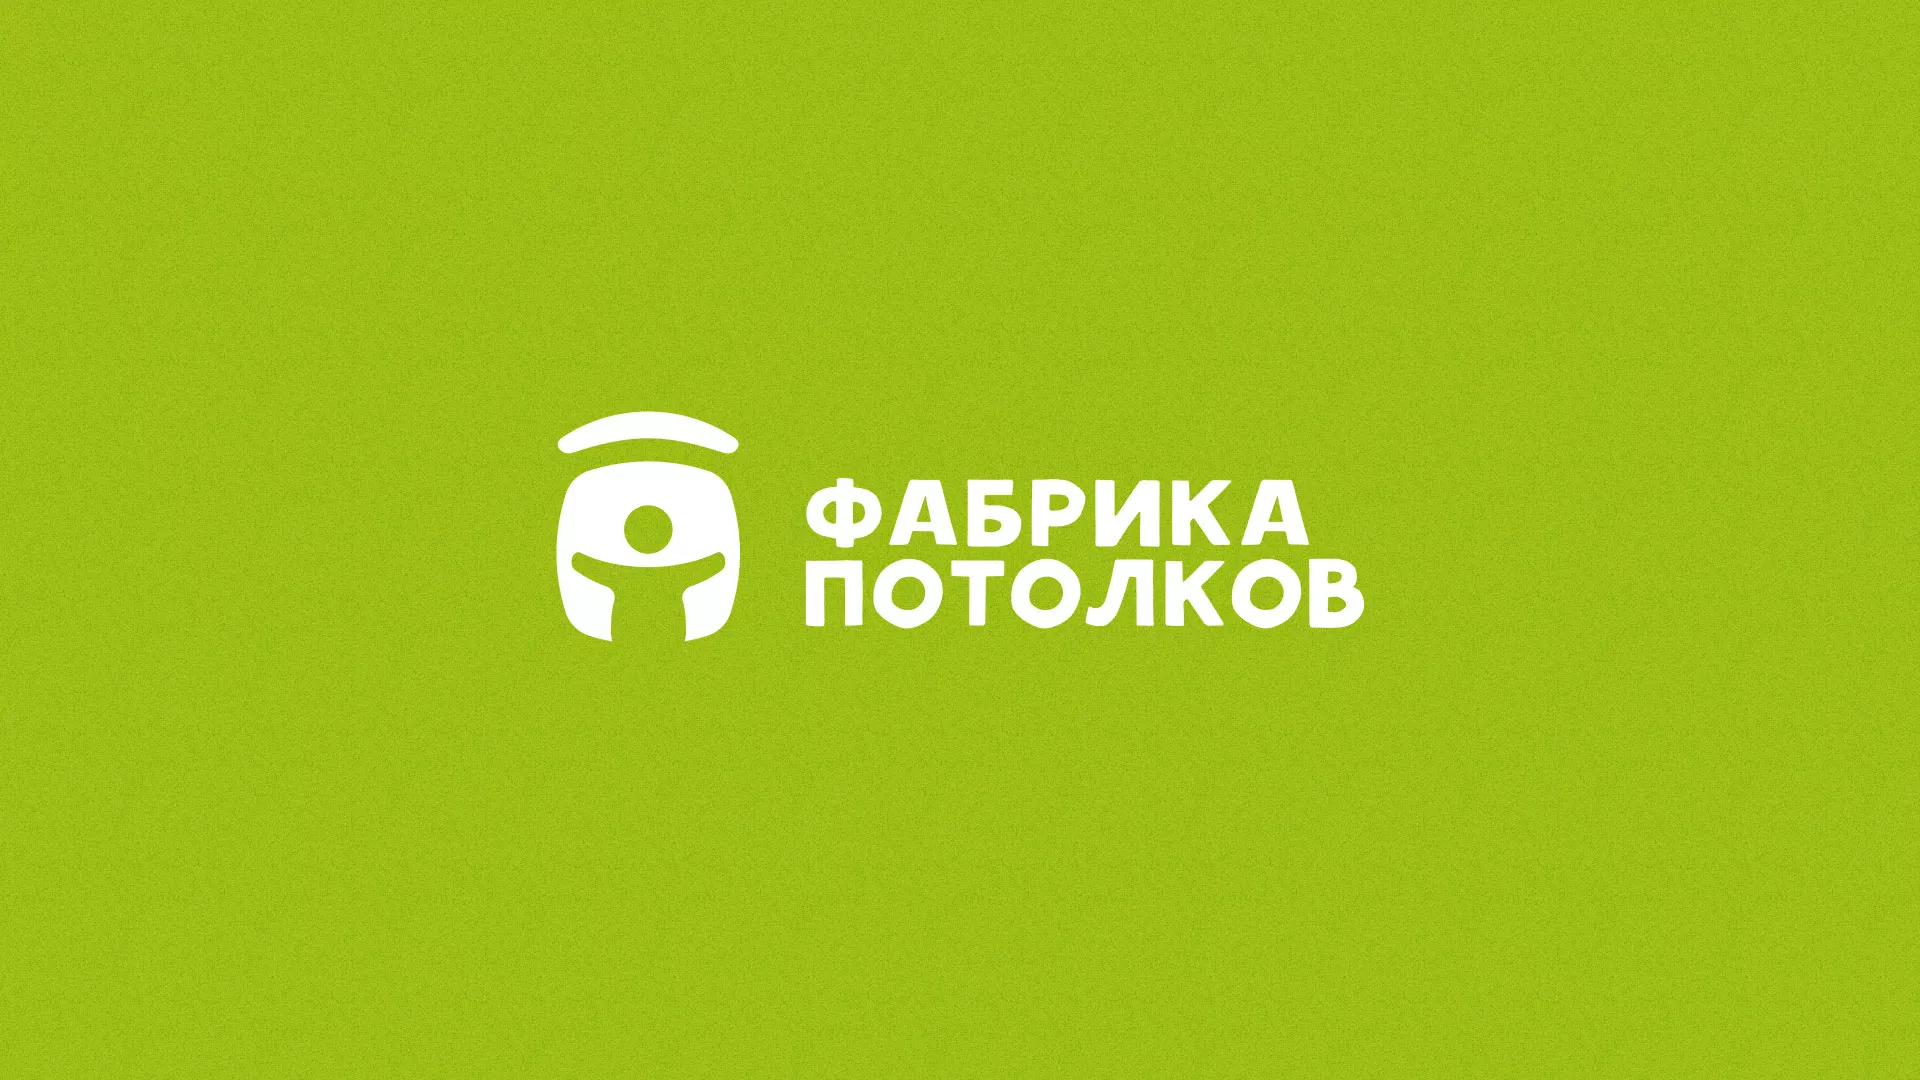 Разработка логотипа для производства натяжных потолков в Усть-Лабинске